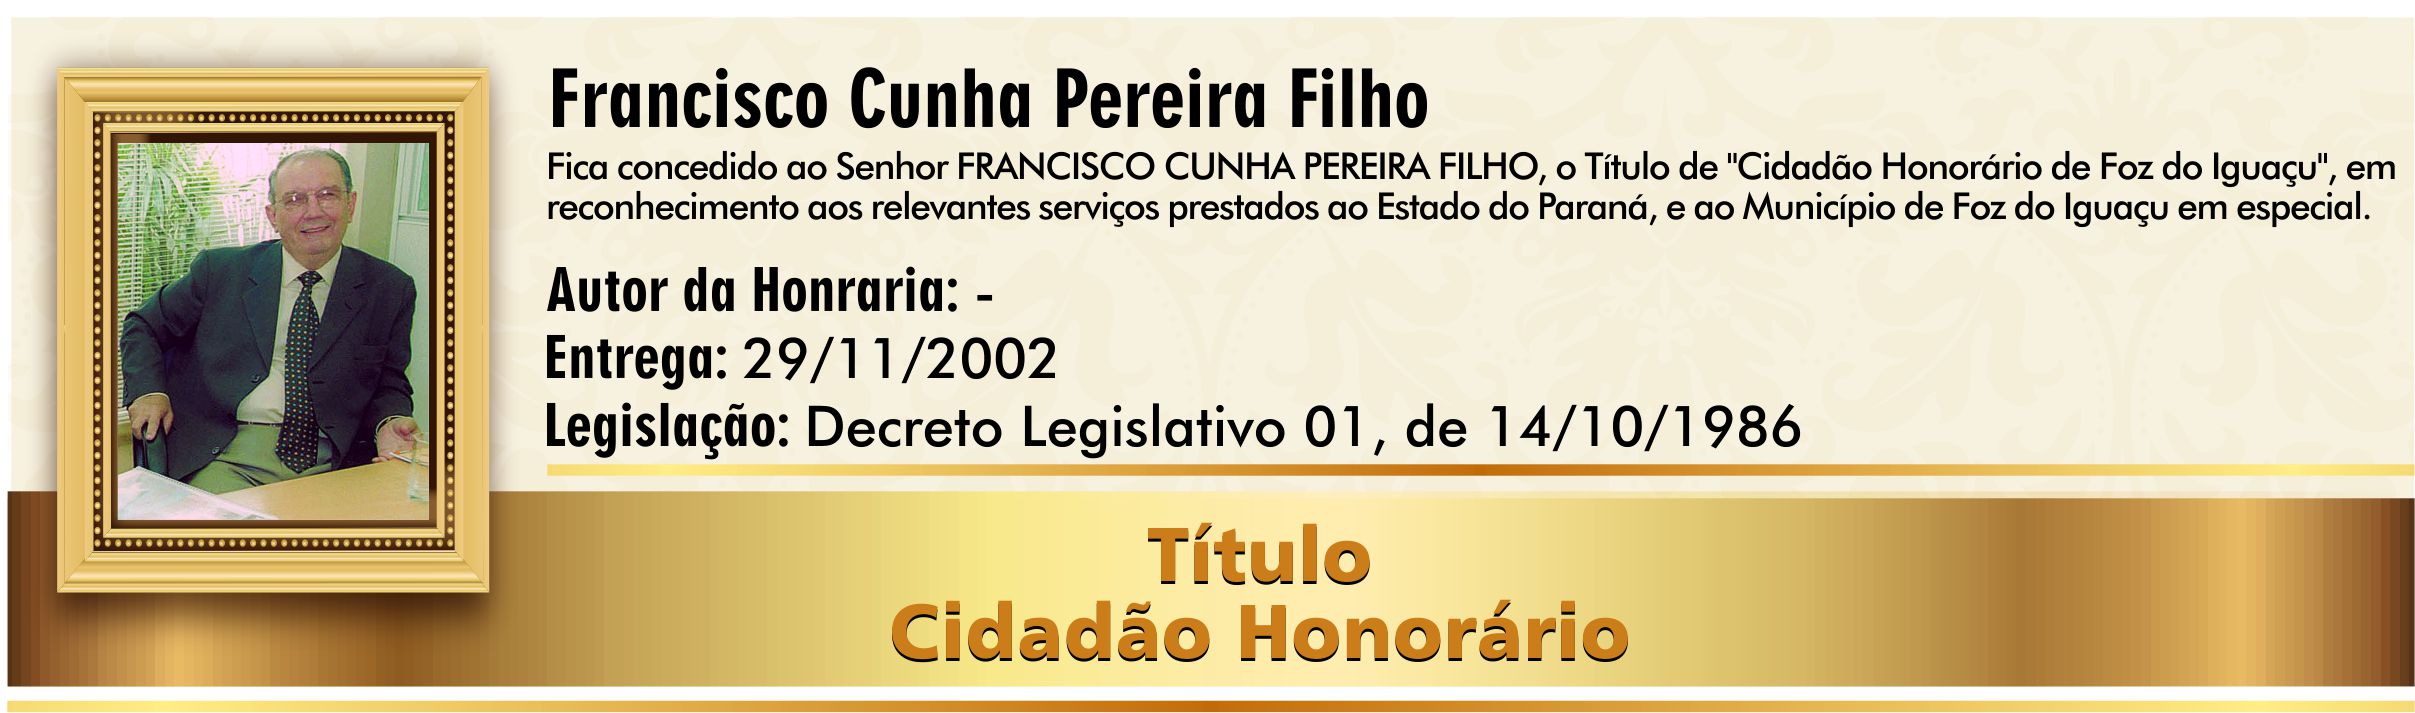 Francisco Cunha Pereira Filho